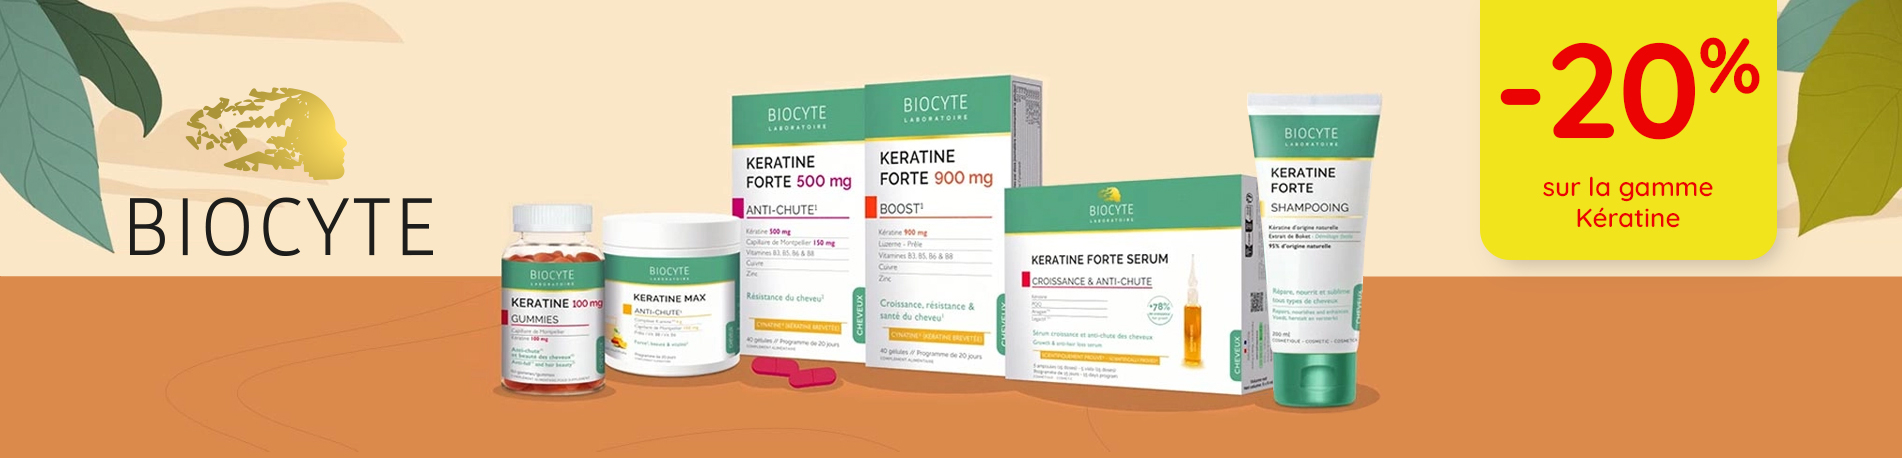 Promotion Biocyte gamme kératine